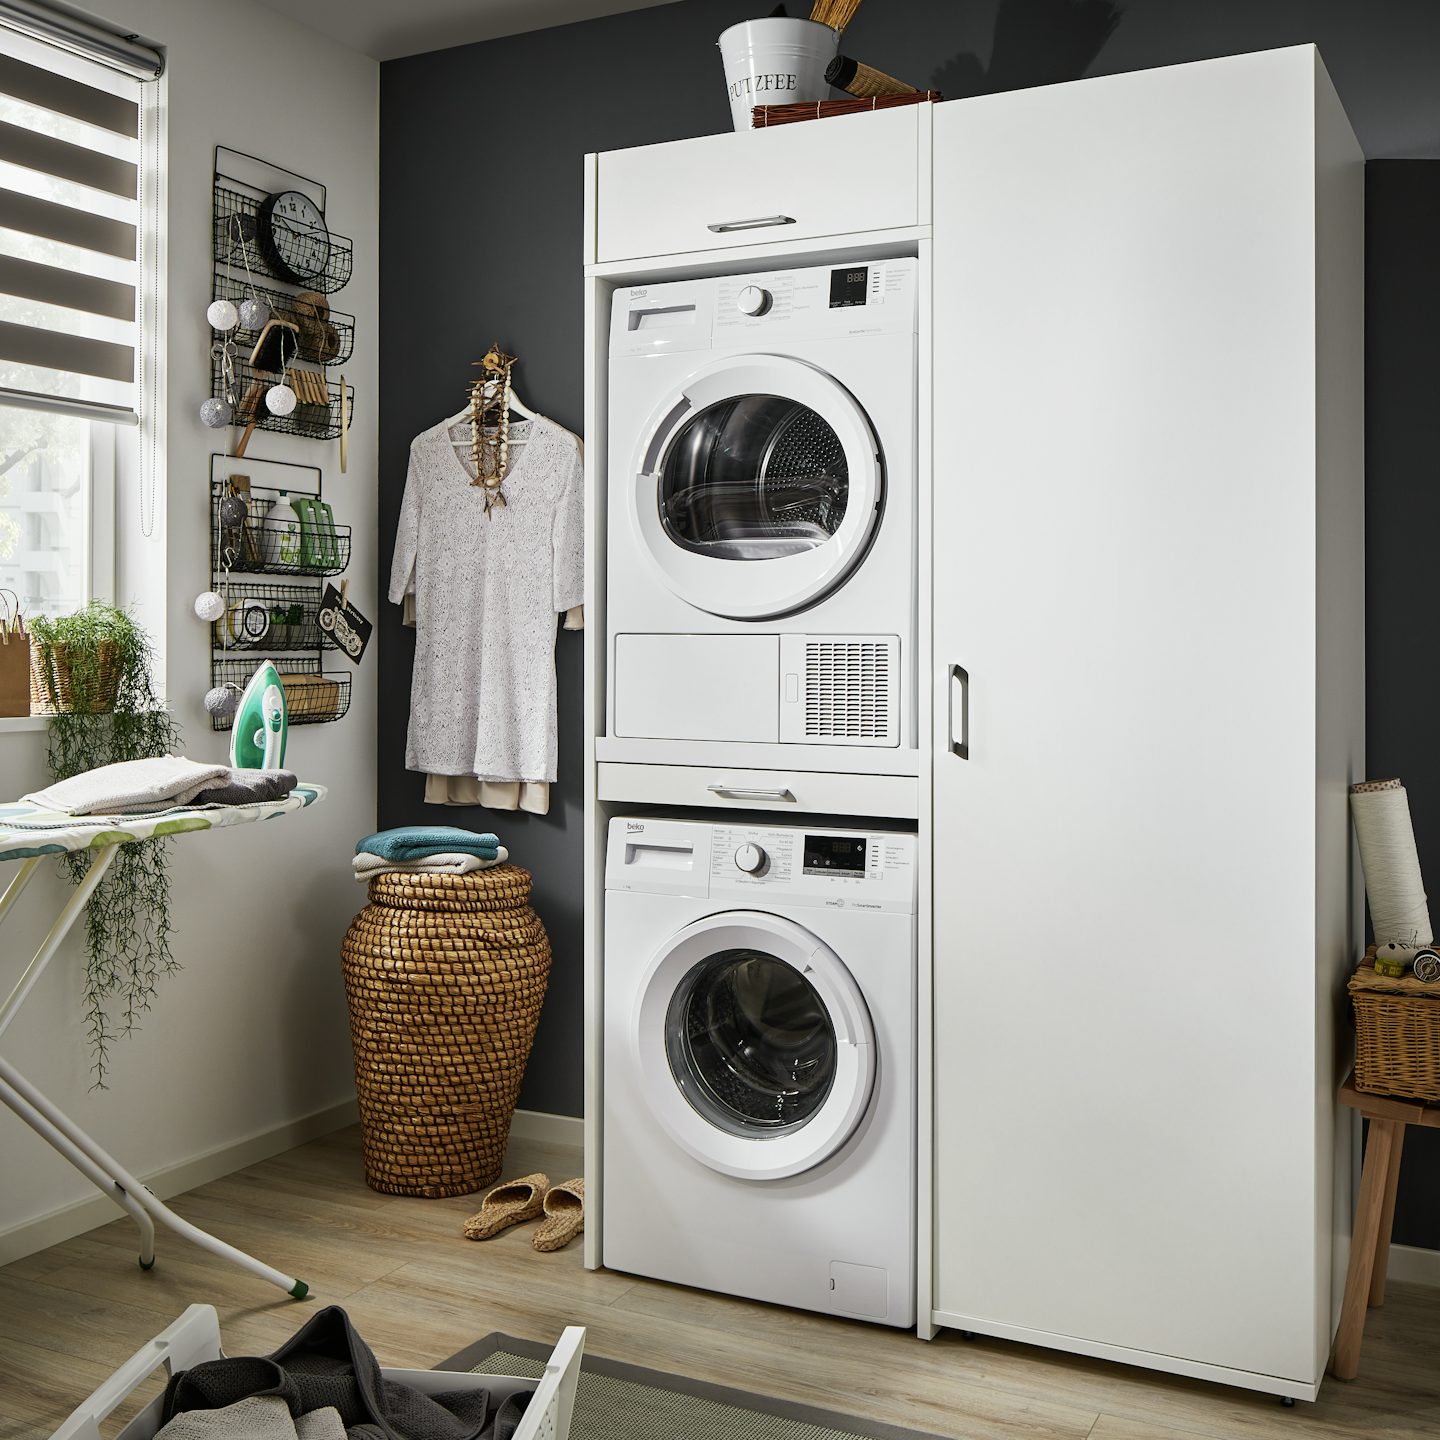 Kan een droger op je wasmachine of andersom? Een droger kan op de wasmachine worden gezet met een tussenstuk of speciale kast ombouw voor wasmachine en droger